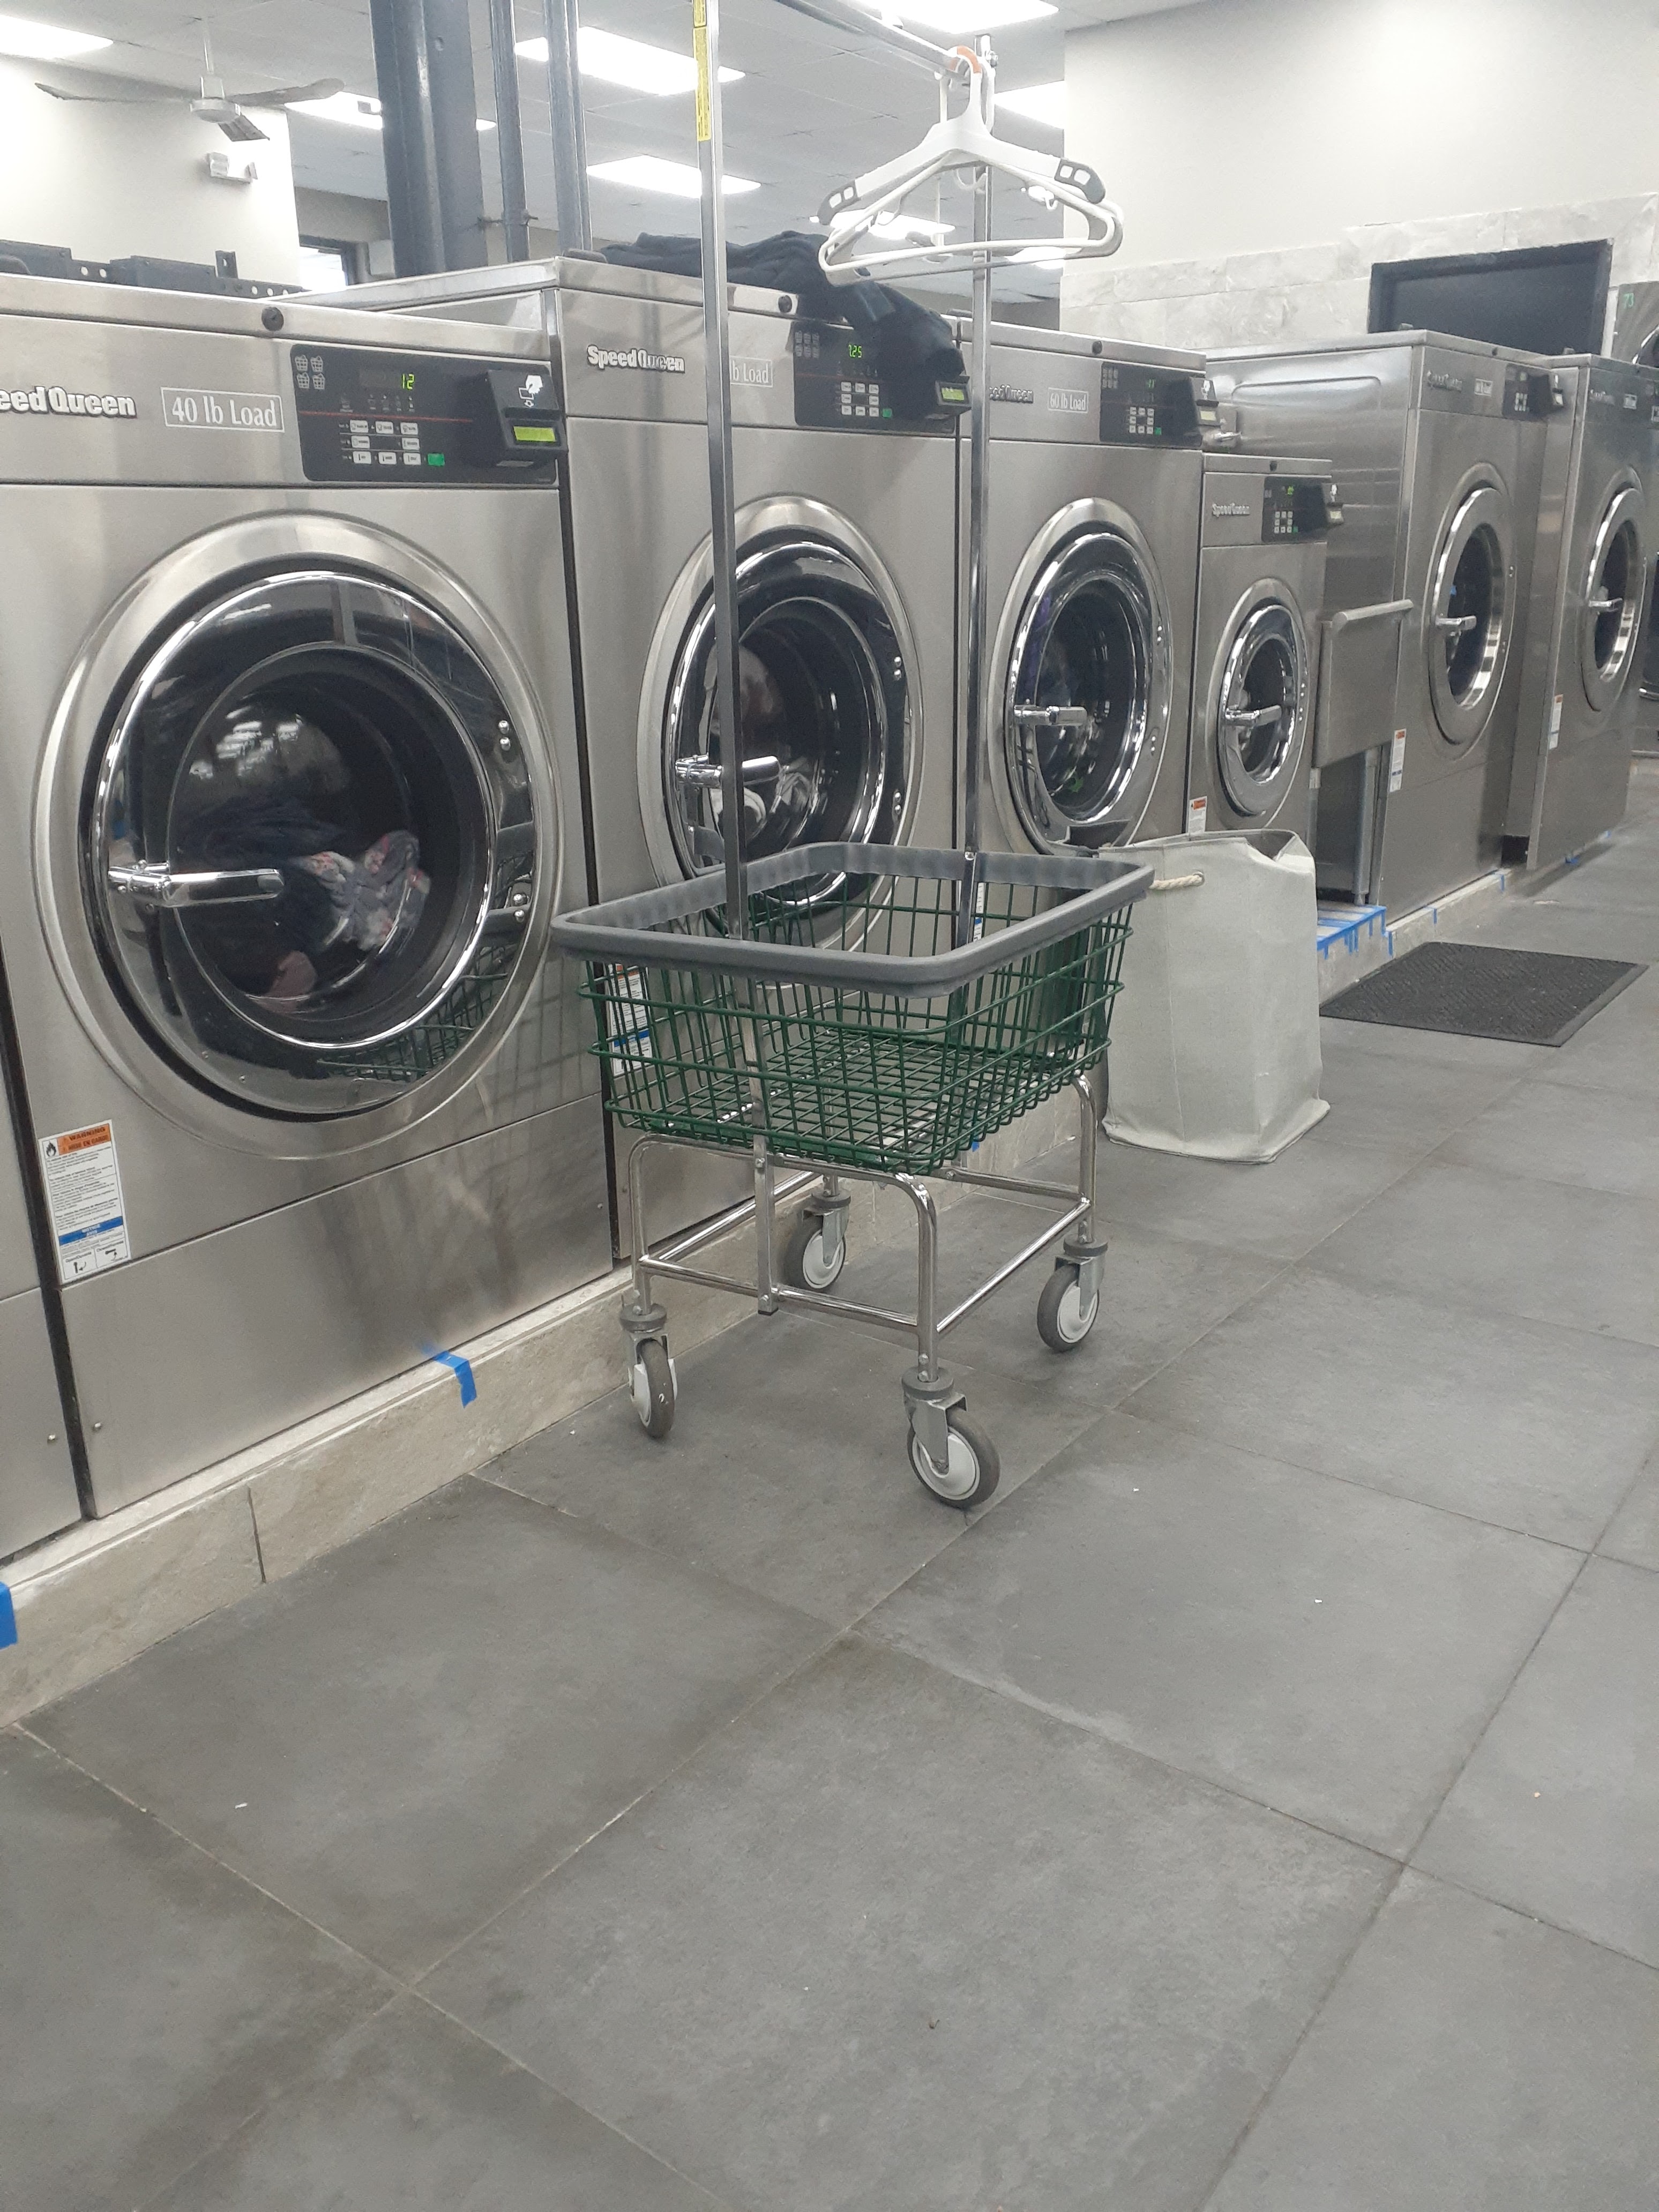 Laundry Depot Union Blvd - Bay Shore, NY, US, 24 hour washateria